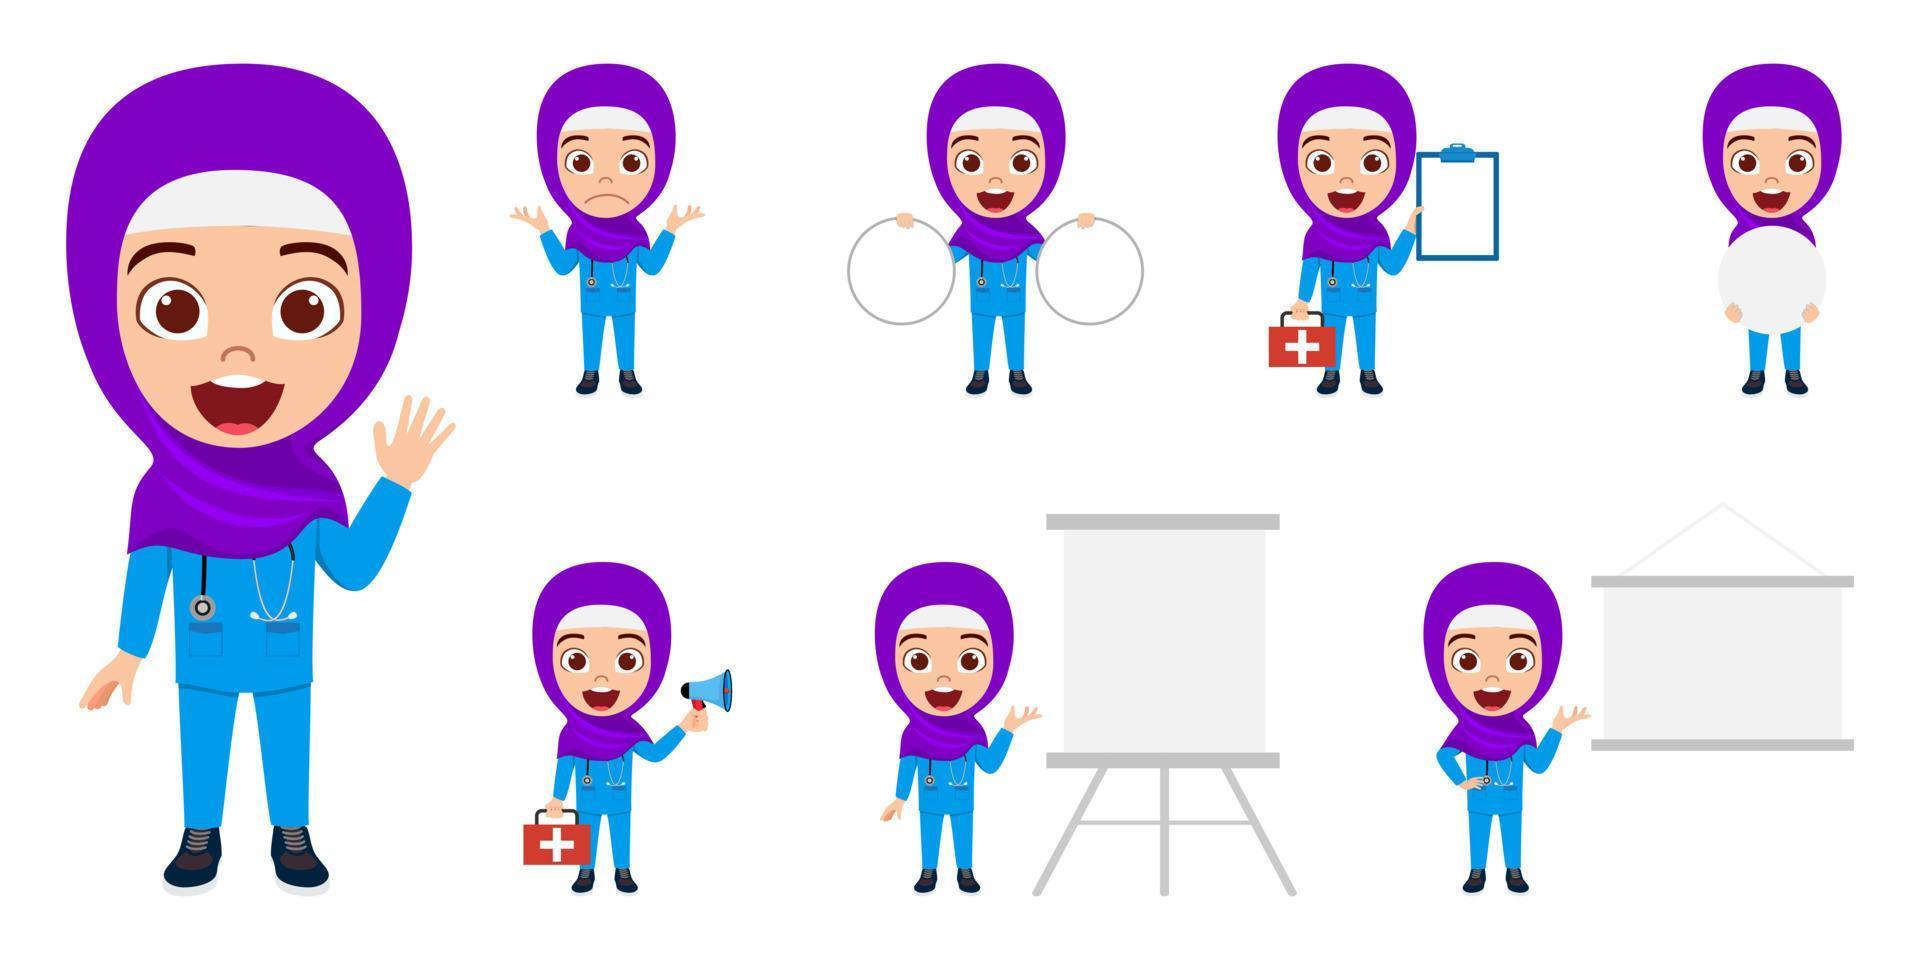 glad söt muslimsk arab kid läkare sjuksköterska karaktär bär sjuksköterska outfit och hijab stående håller mikrofon urklipp medicinsk kit och gör olika åtgärder vektor